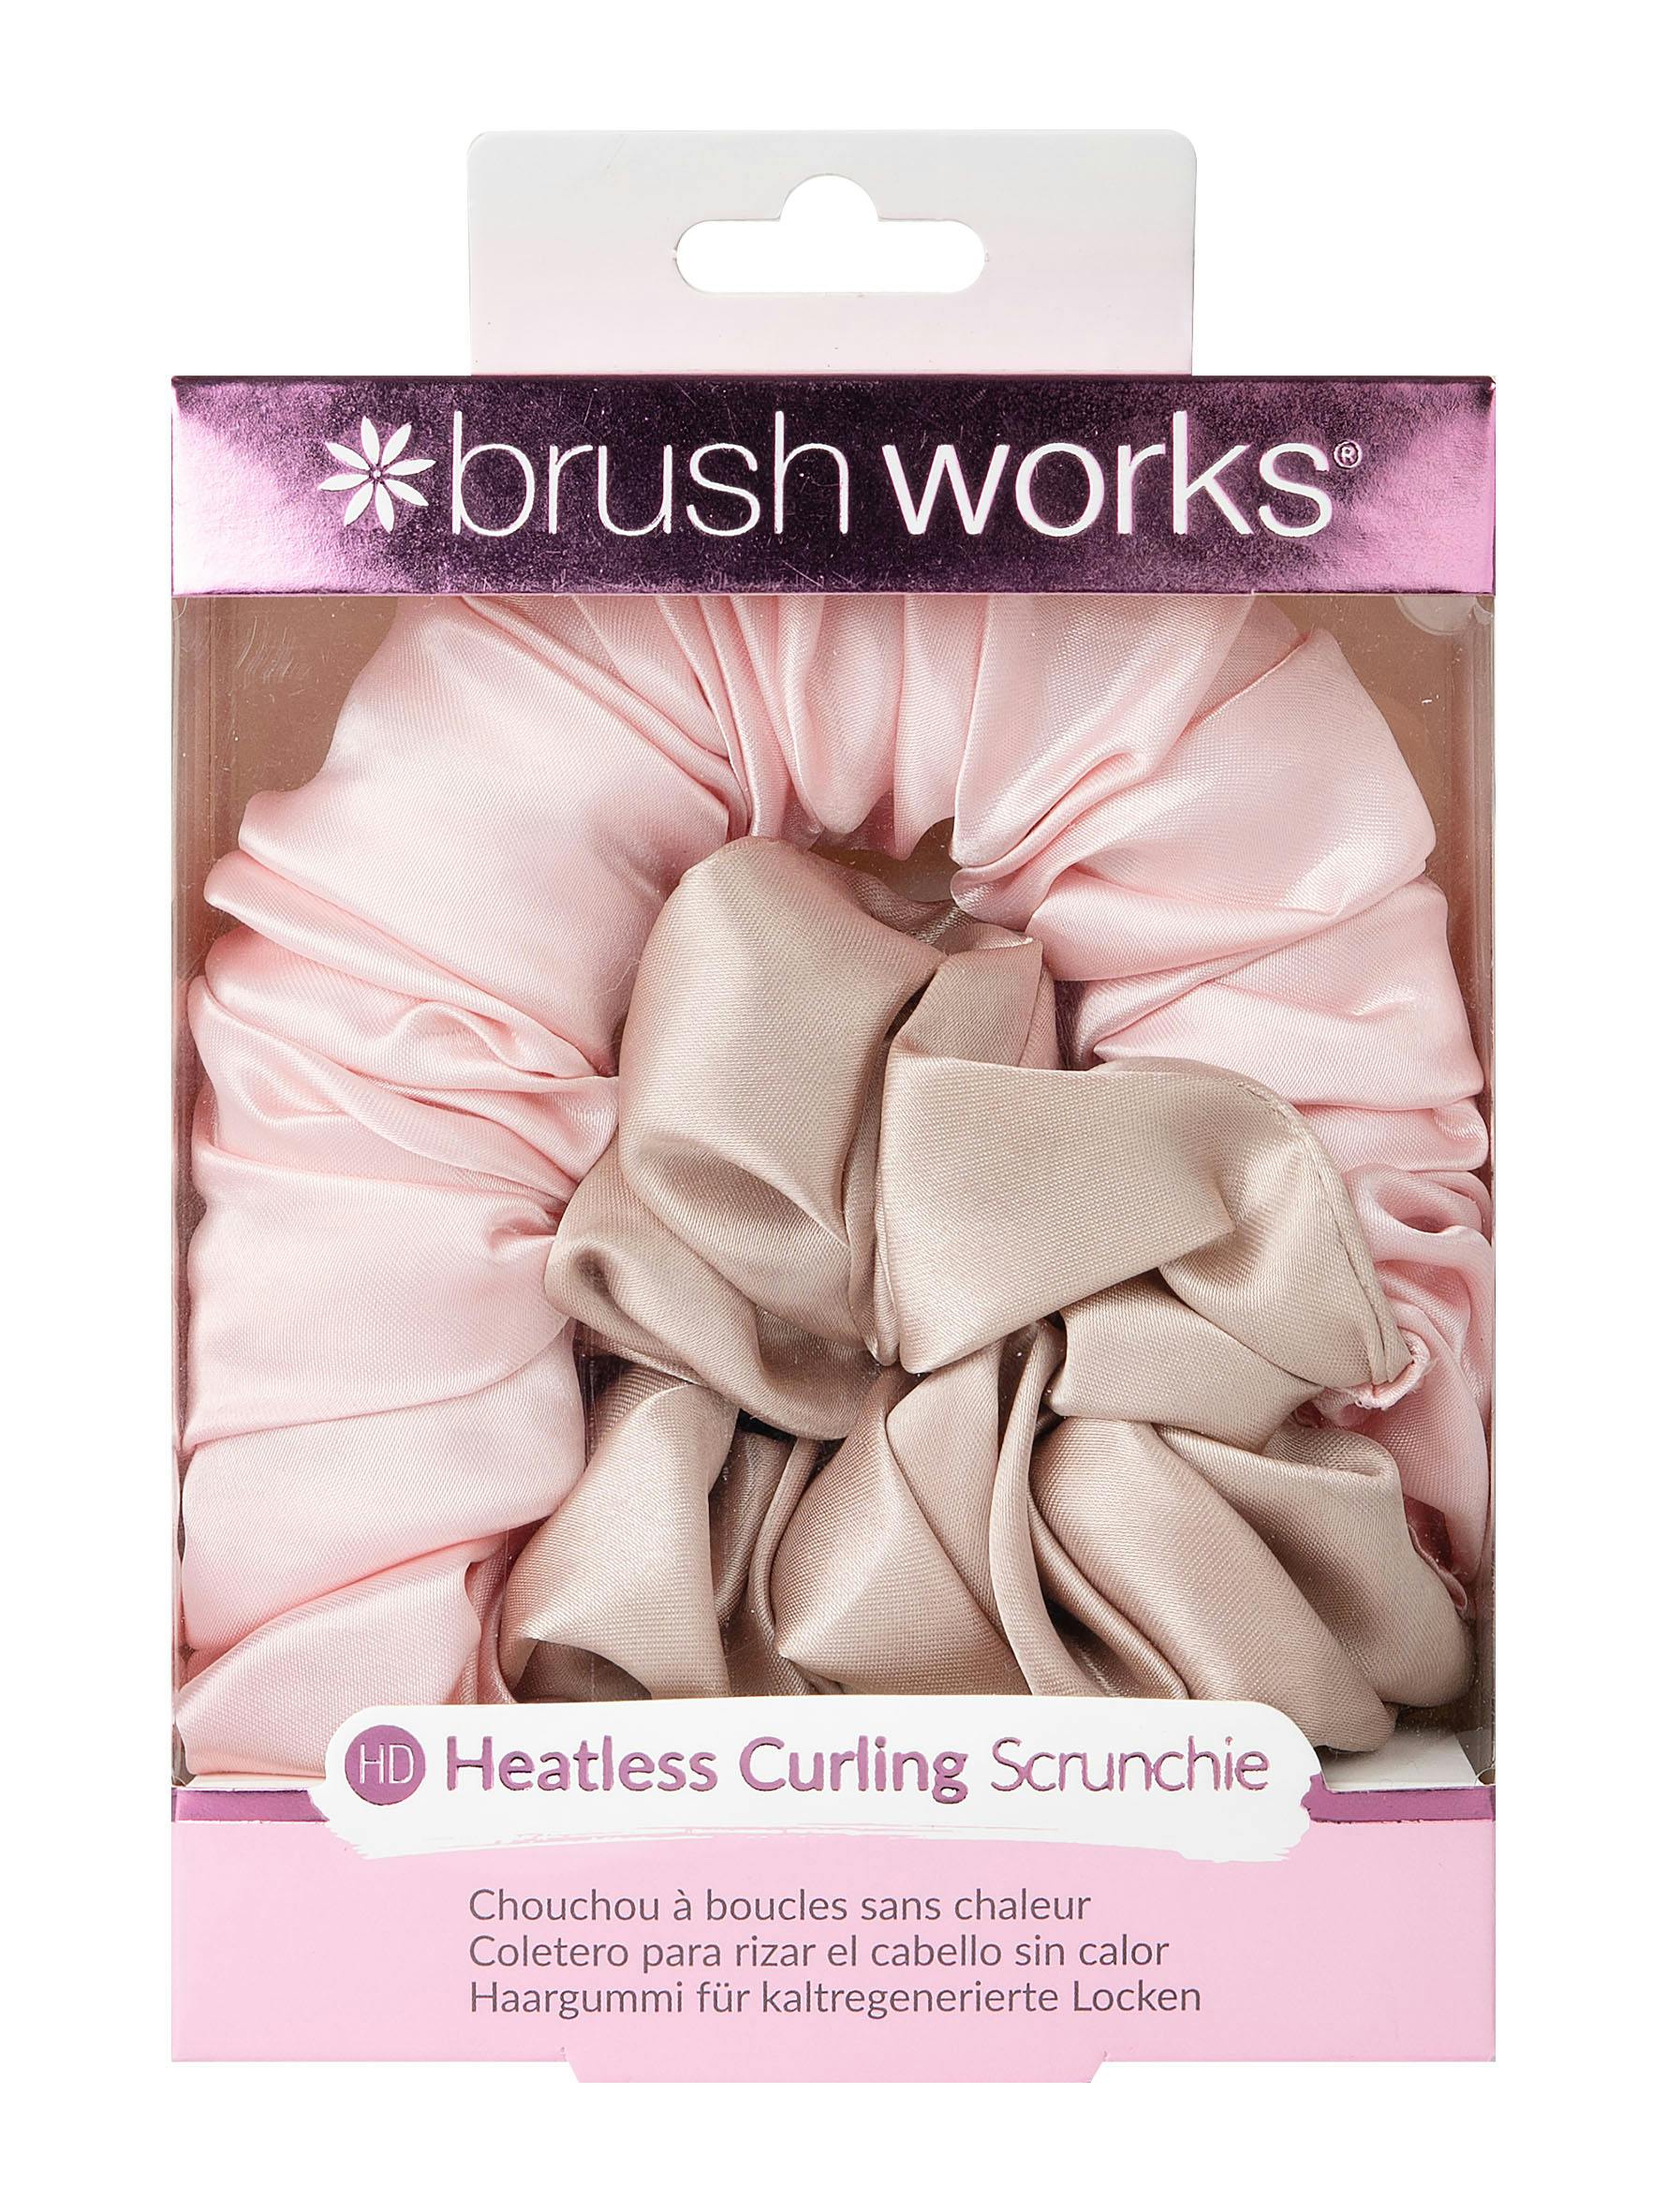 brushworks Heatless Curling Scrunchie 1 - 44.95 kr